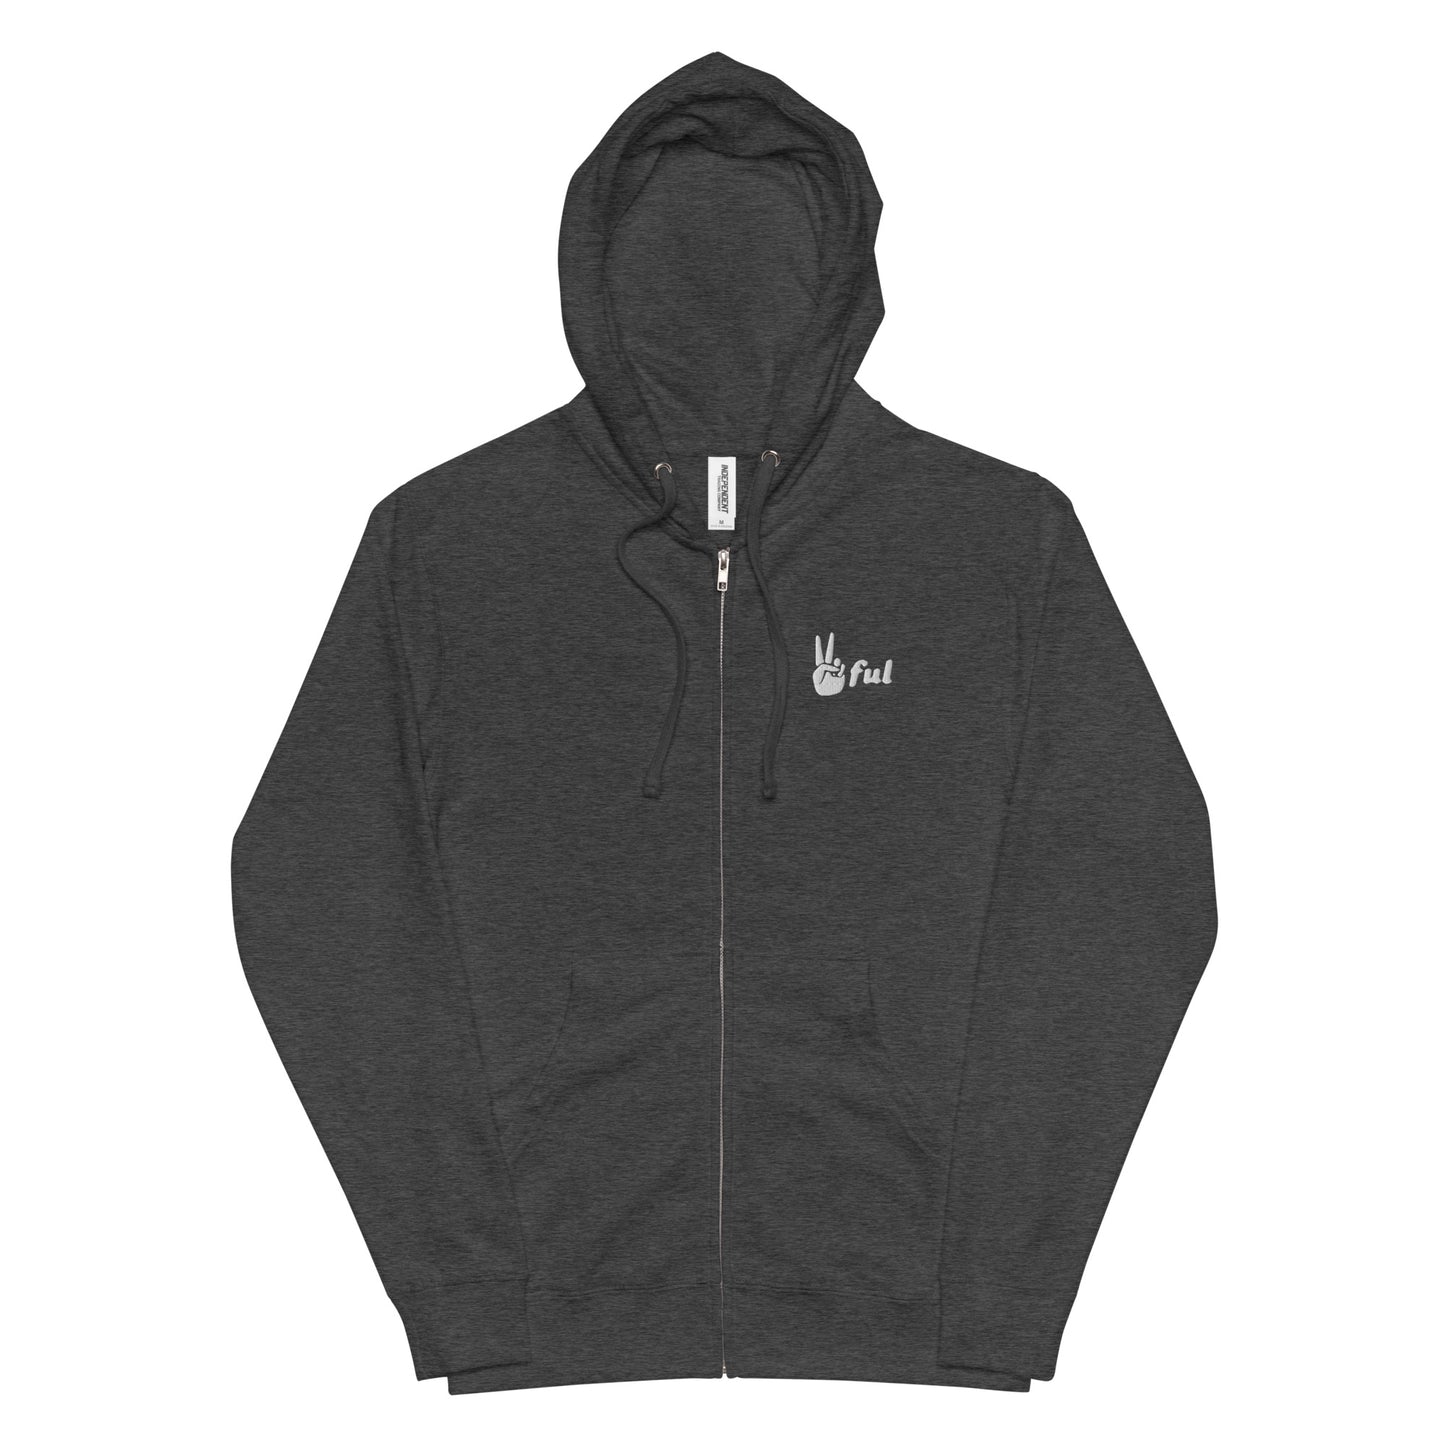 Unisex Built Different Peaceful fleece zip up hoodie